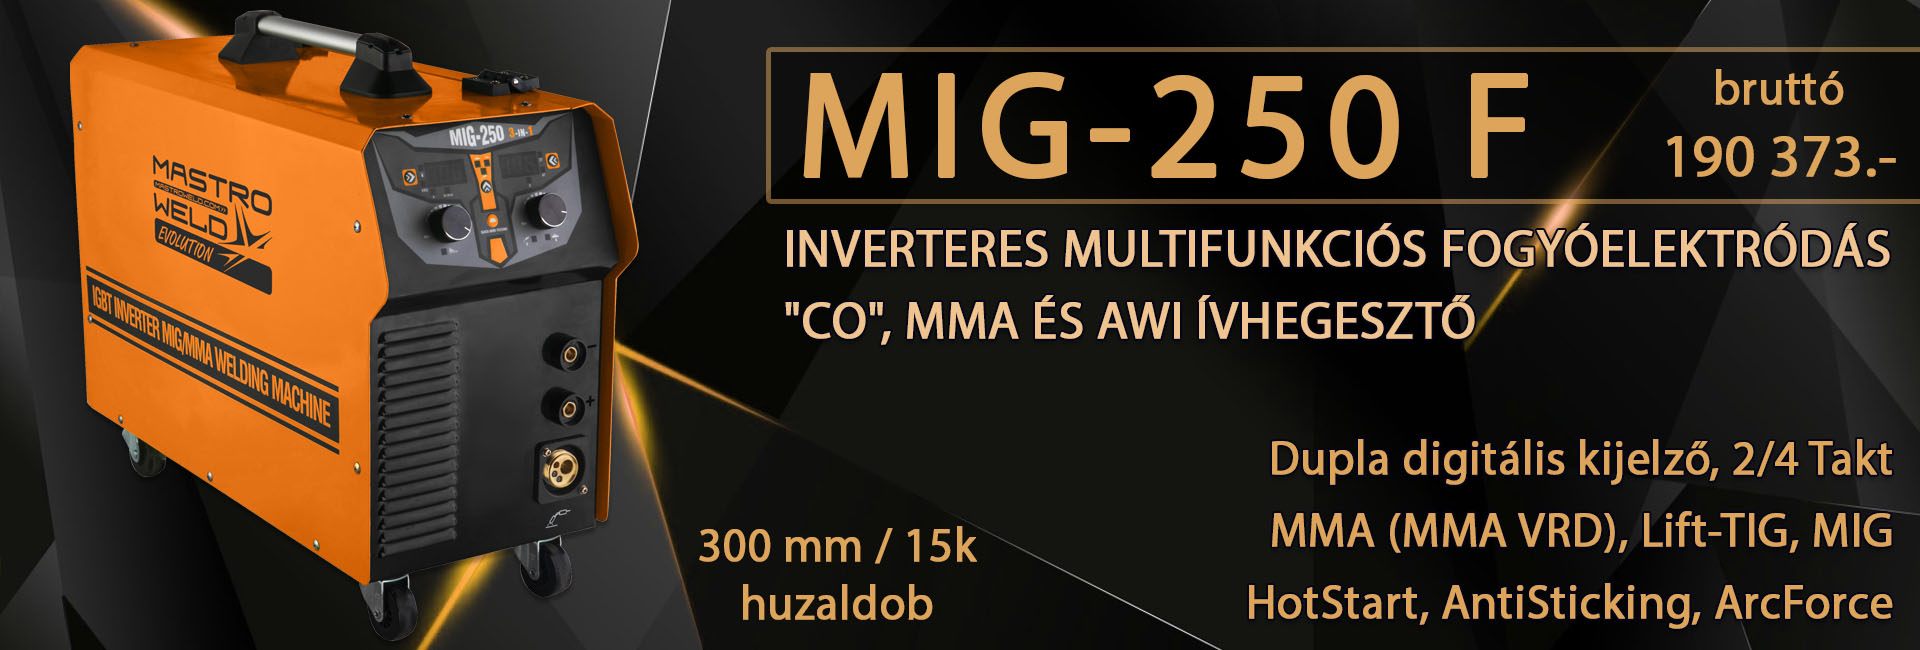 MIG-250 F